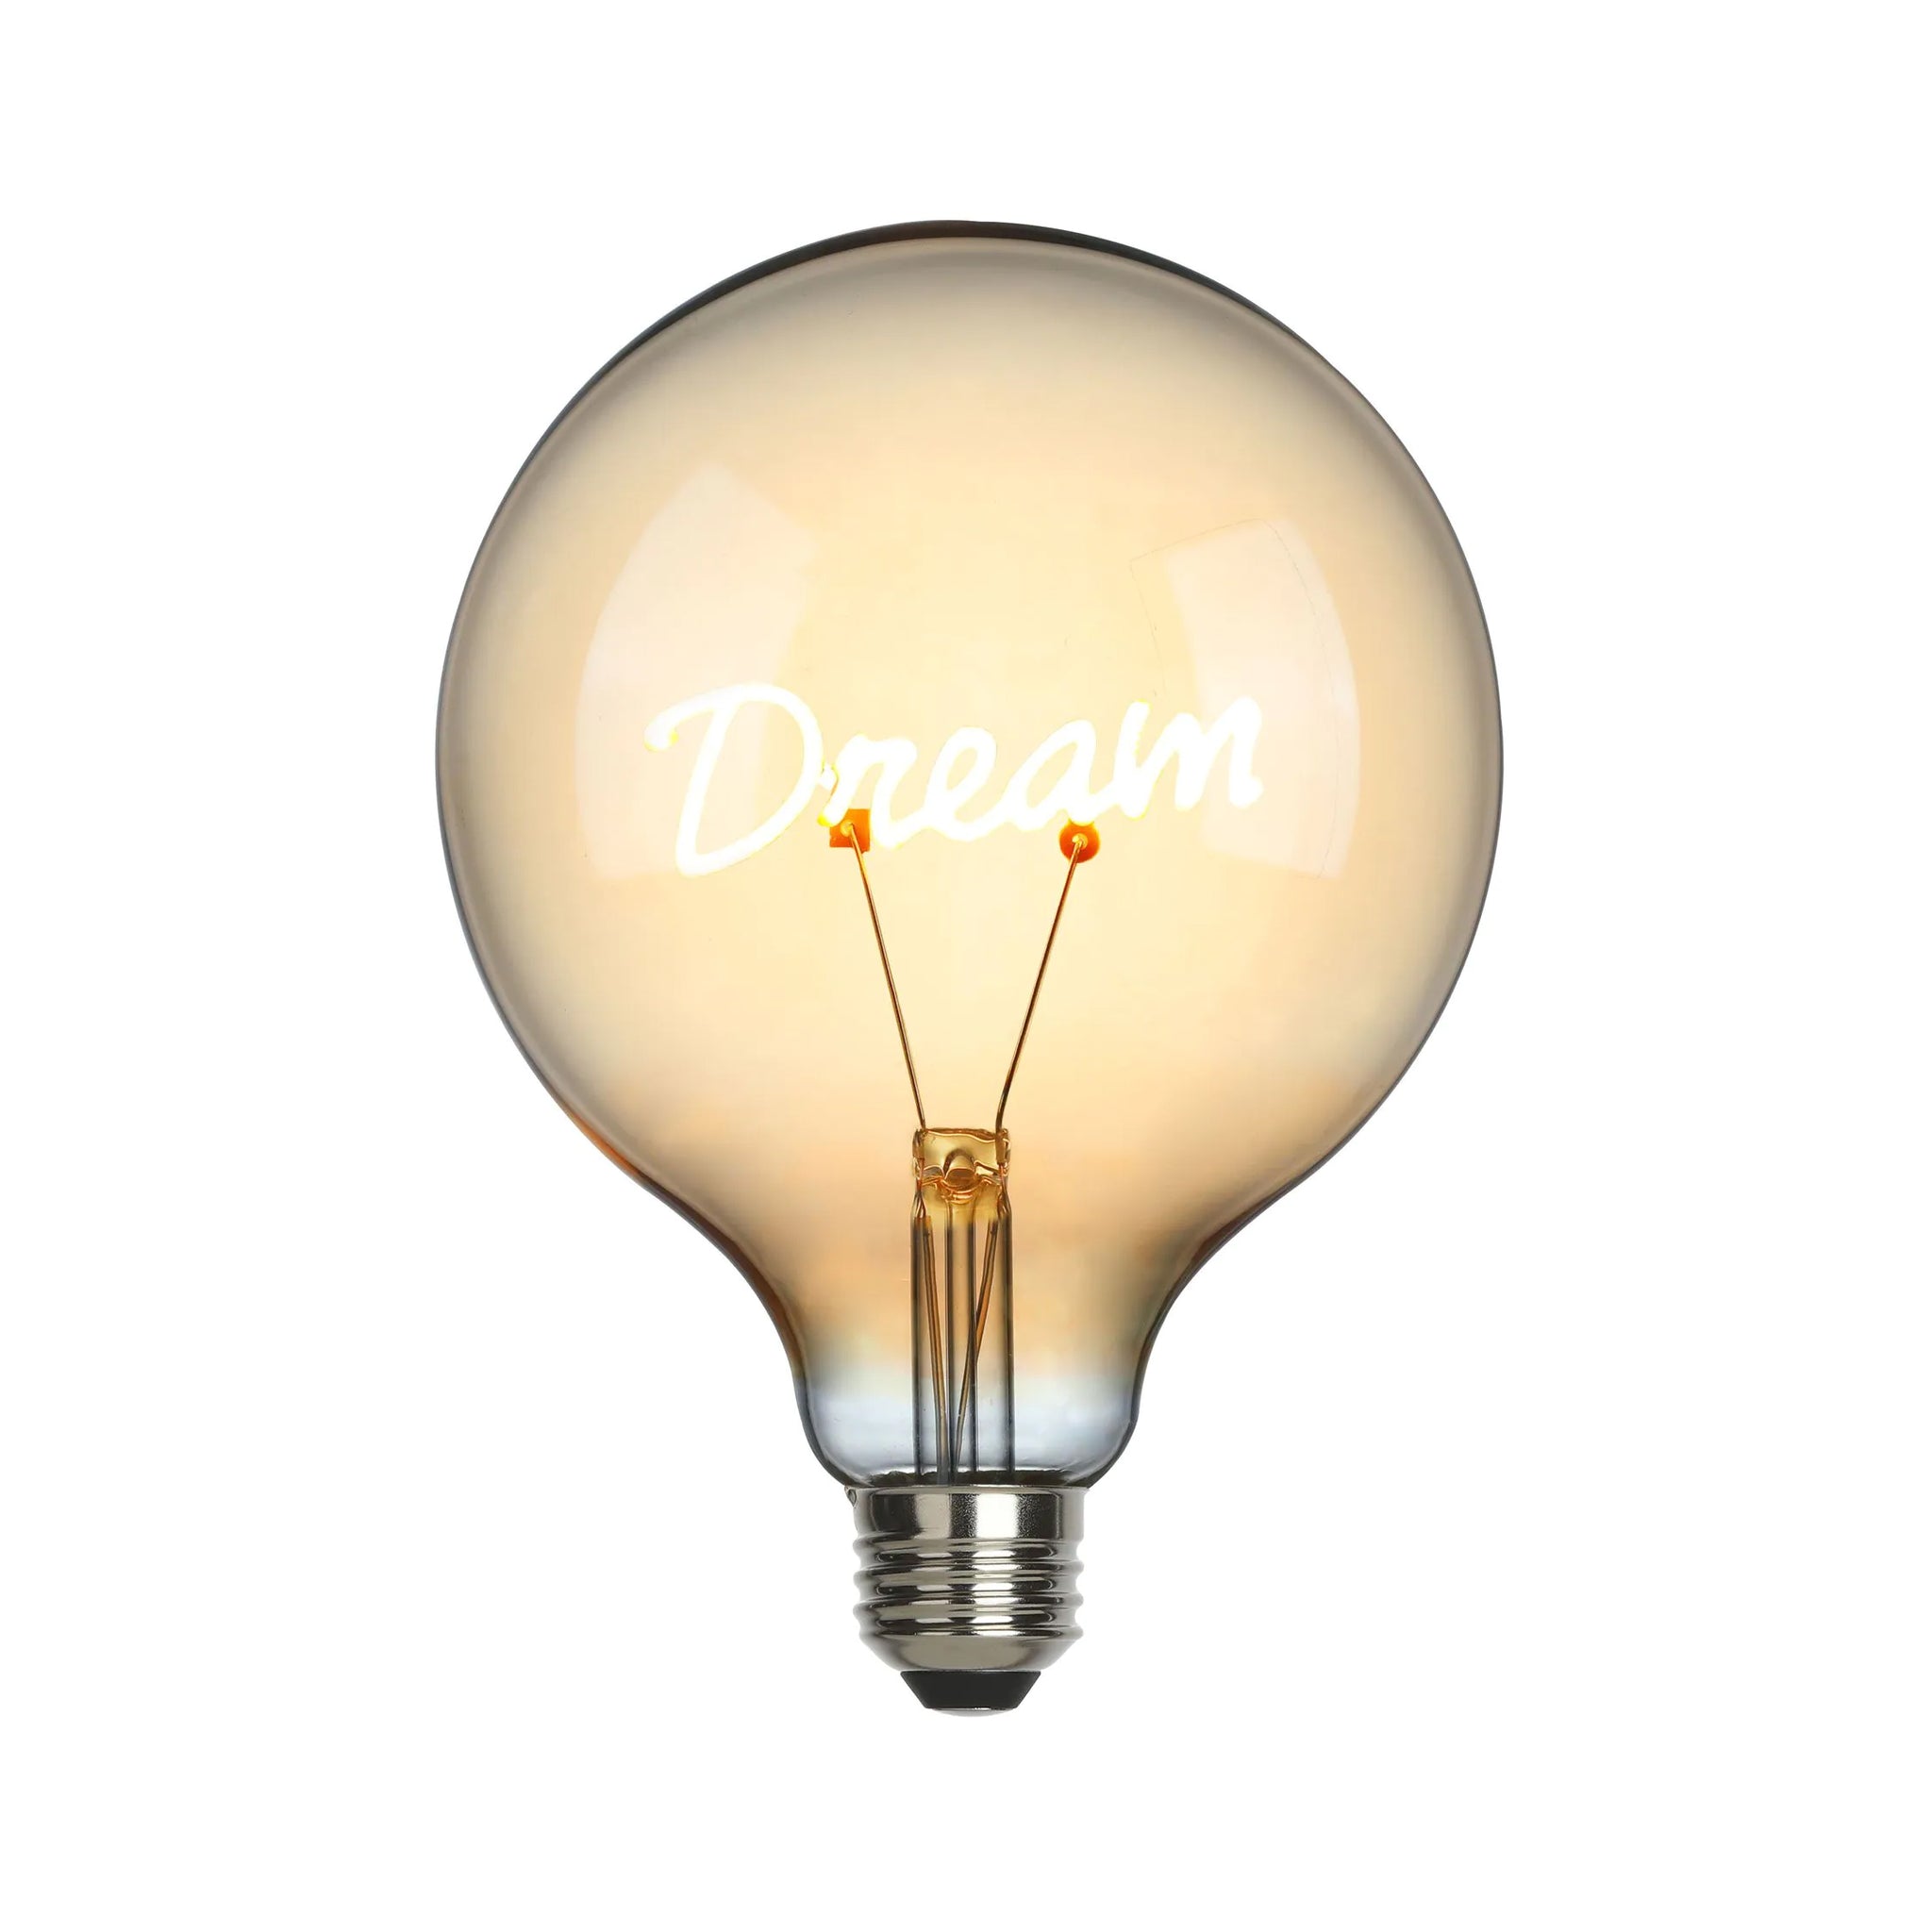 Sompex LED-Filament lamp large Dream│art. 625132│voorkant zonder armatuur en witte achtergrond